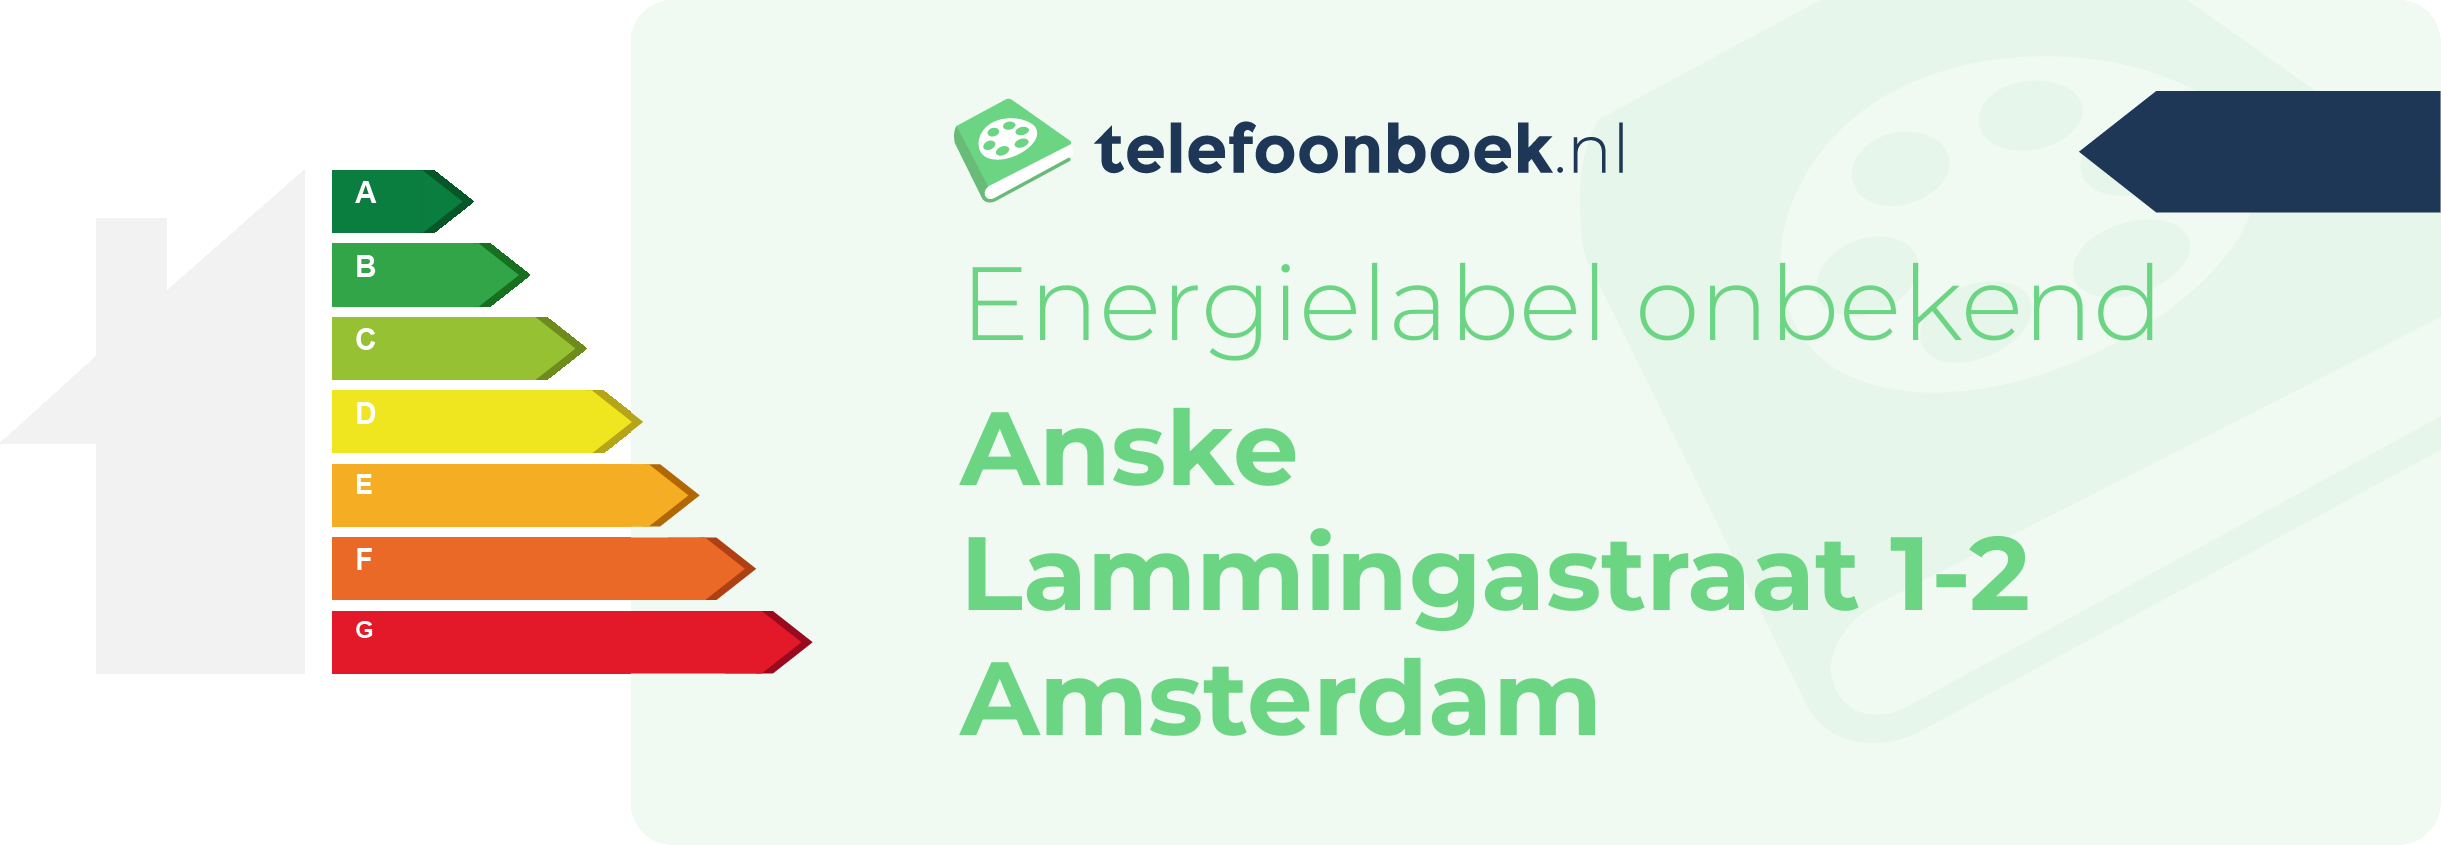 Energielabel Anske Lammingastraat 1-2 Amsterdam